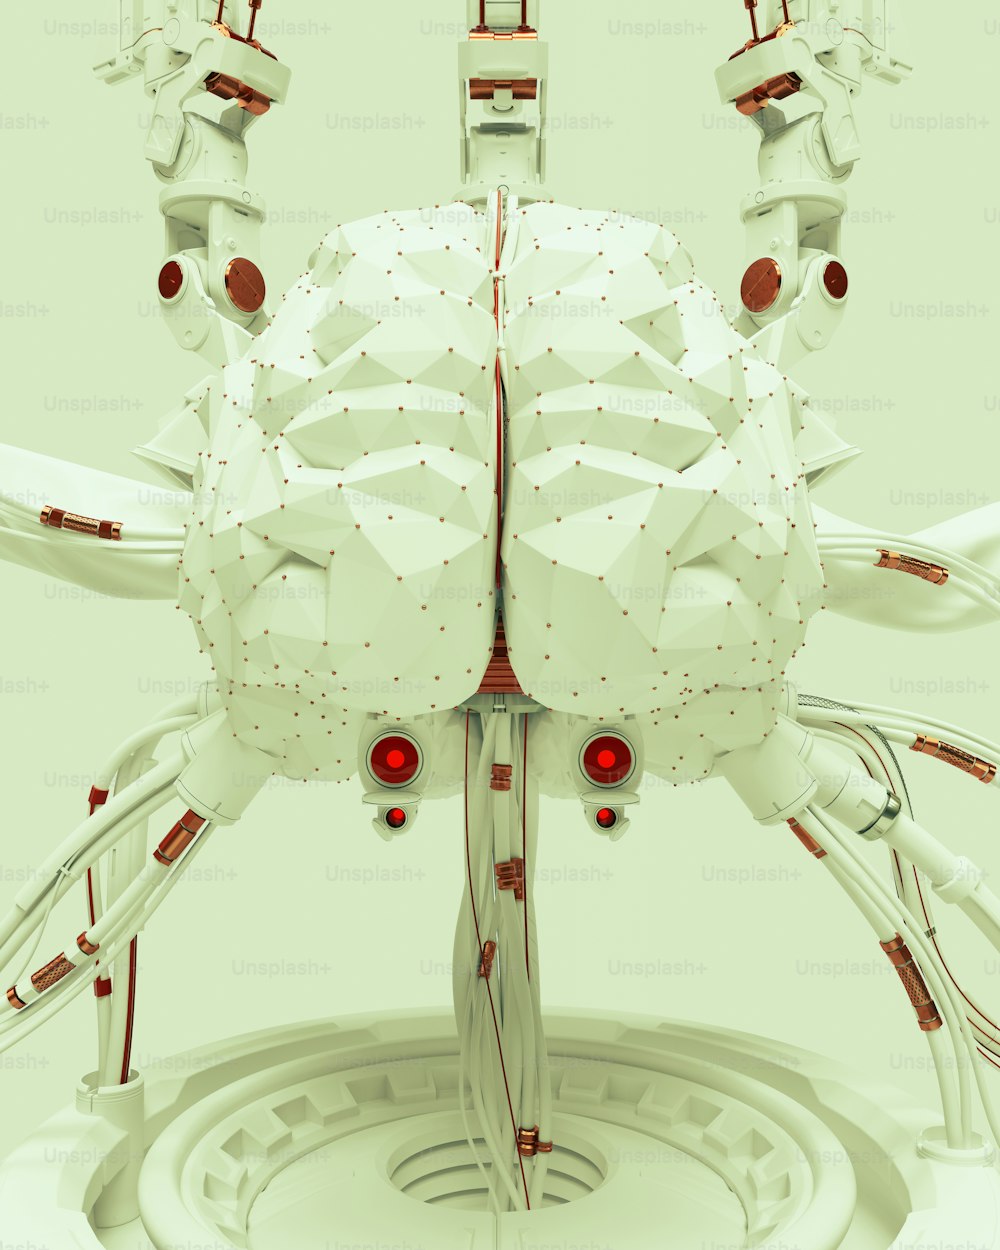 un'immagine generata al computer di un robot bianco con gli occhi rossi